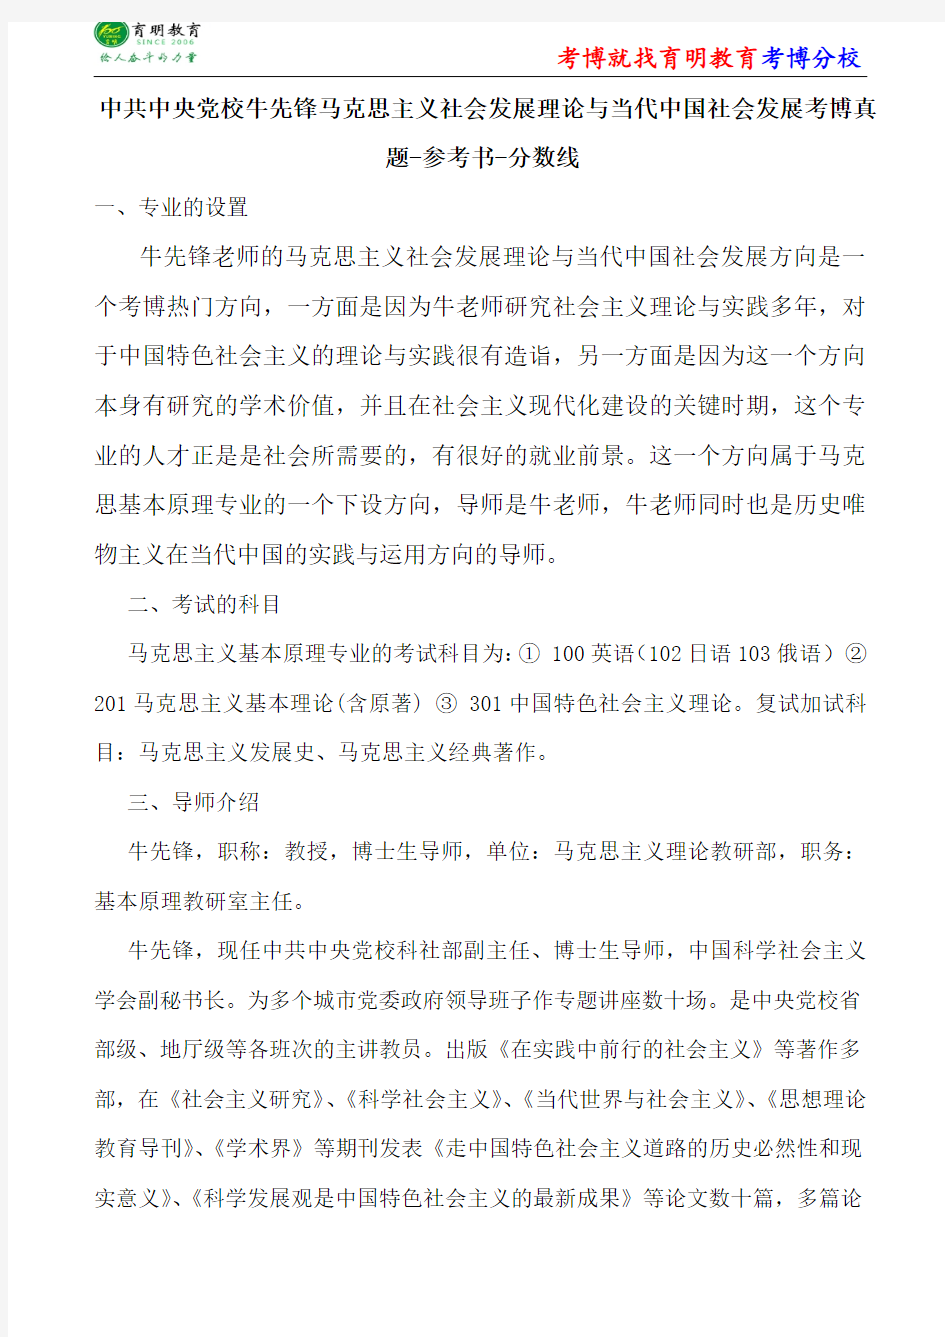 中共中央党校牛先锋马克思主义社会发展理论与当代中国社会发展考博真题-参考书-分数线